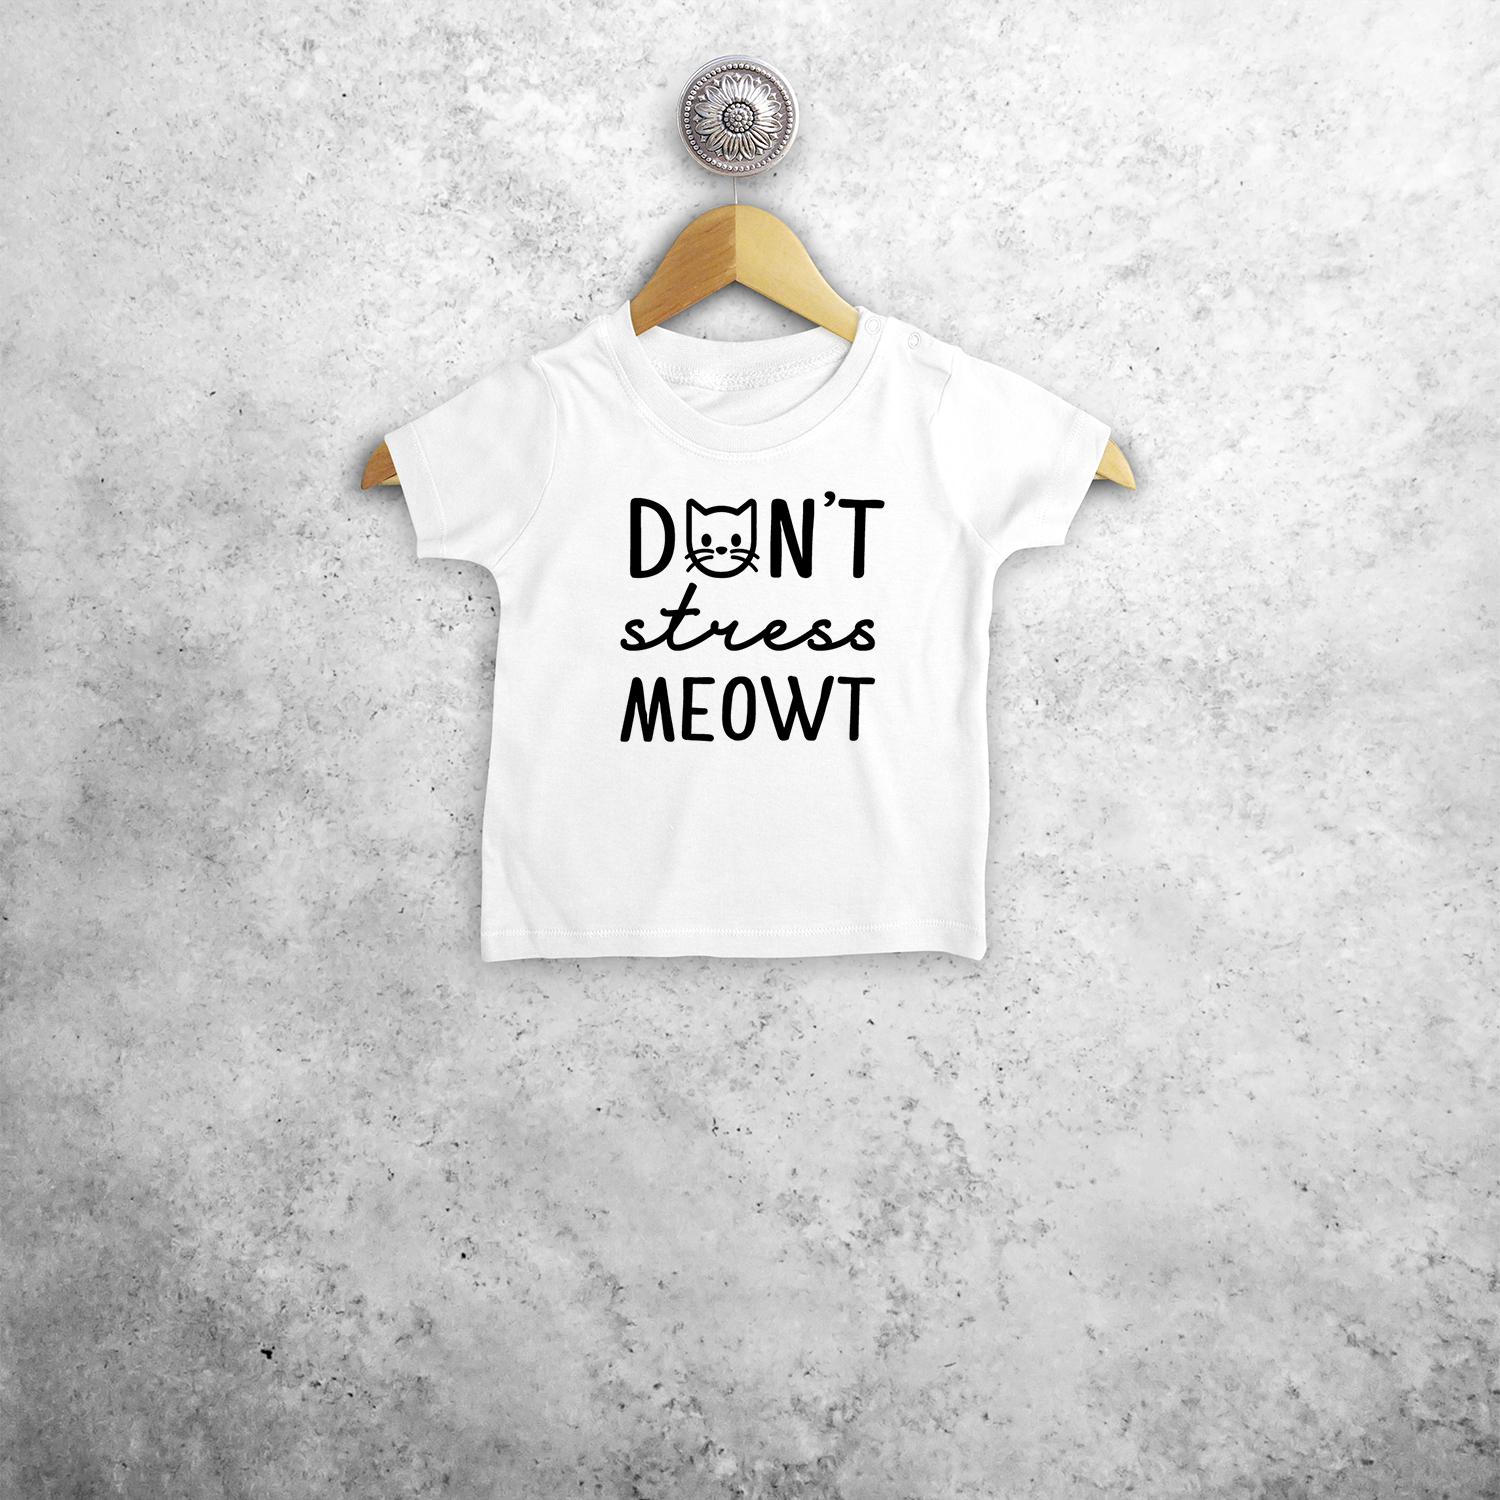 Don't stress meowt' baby shirt met korte mouwen